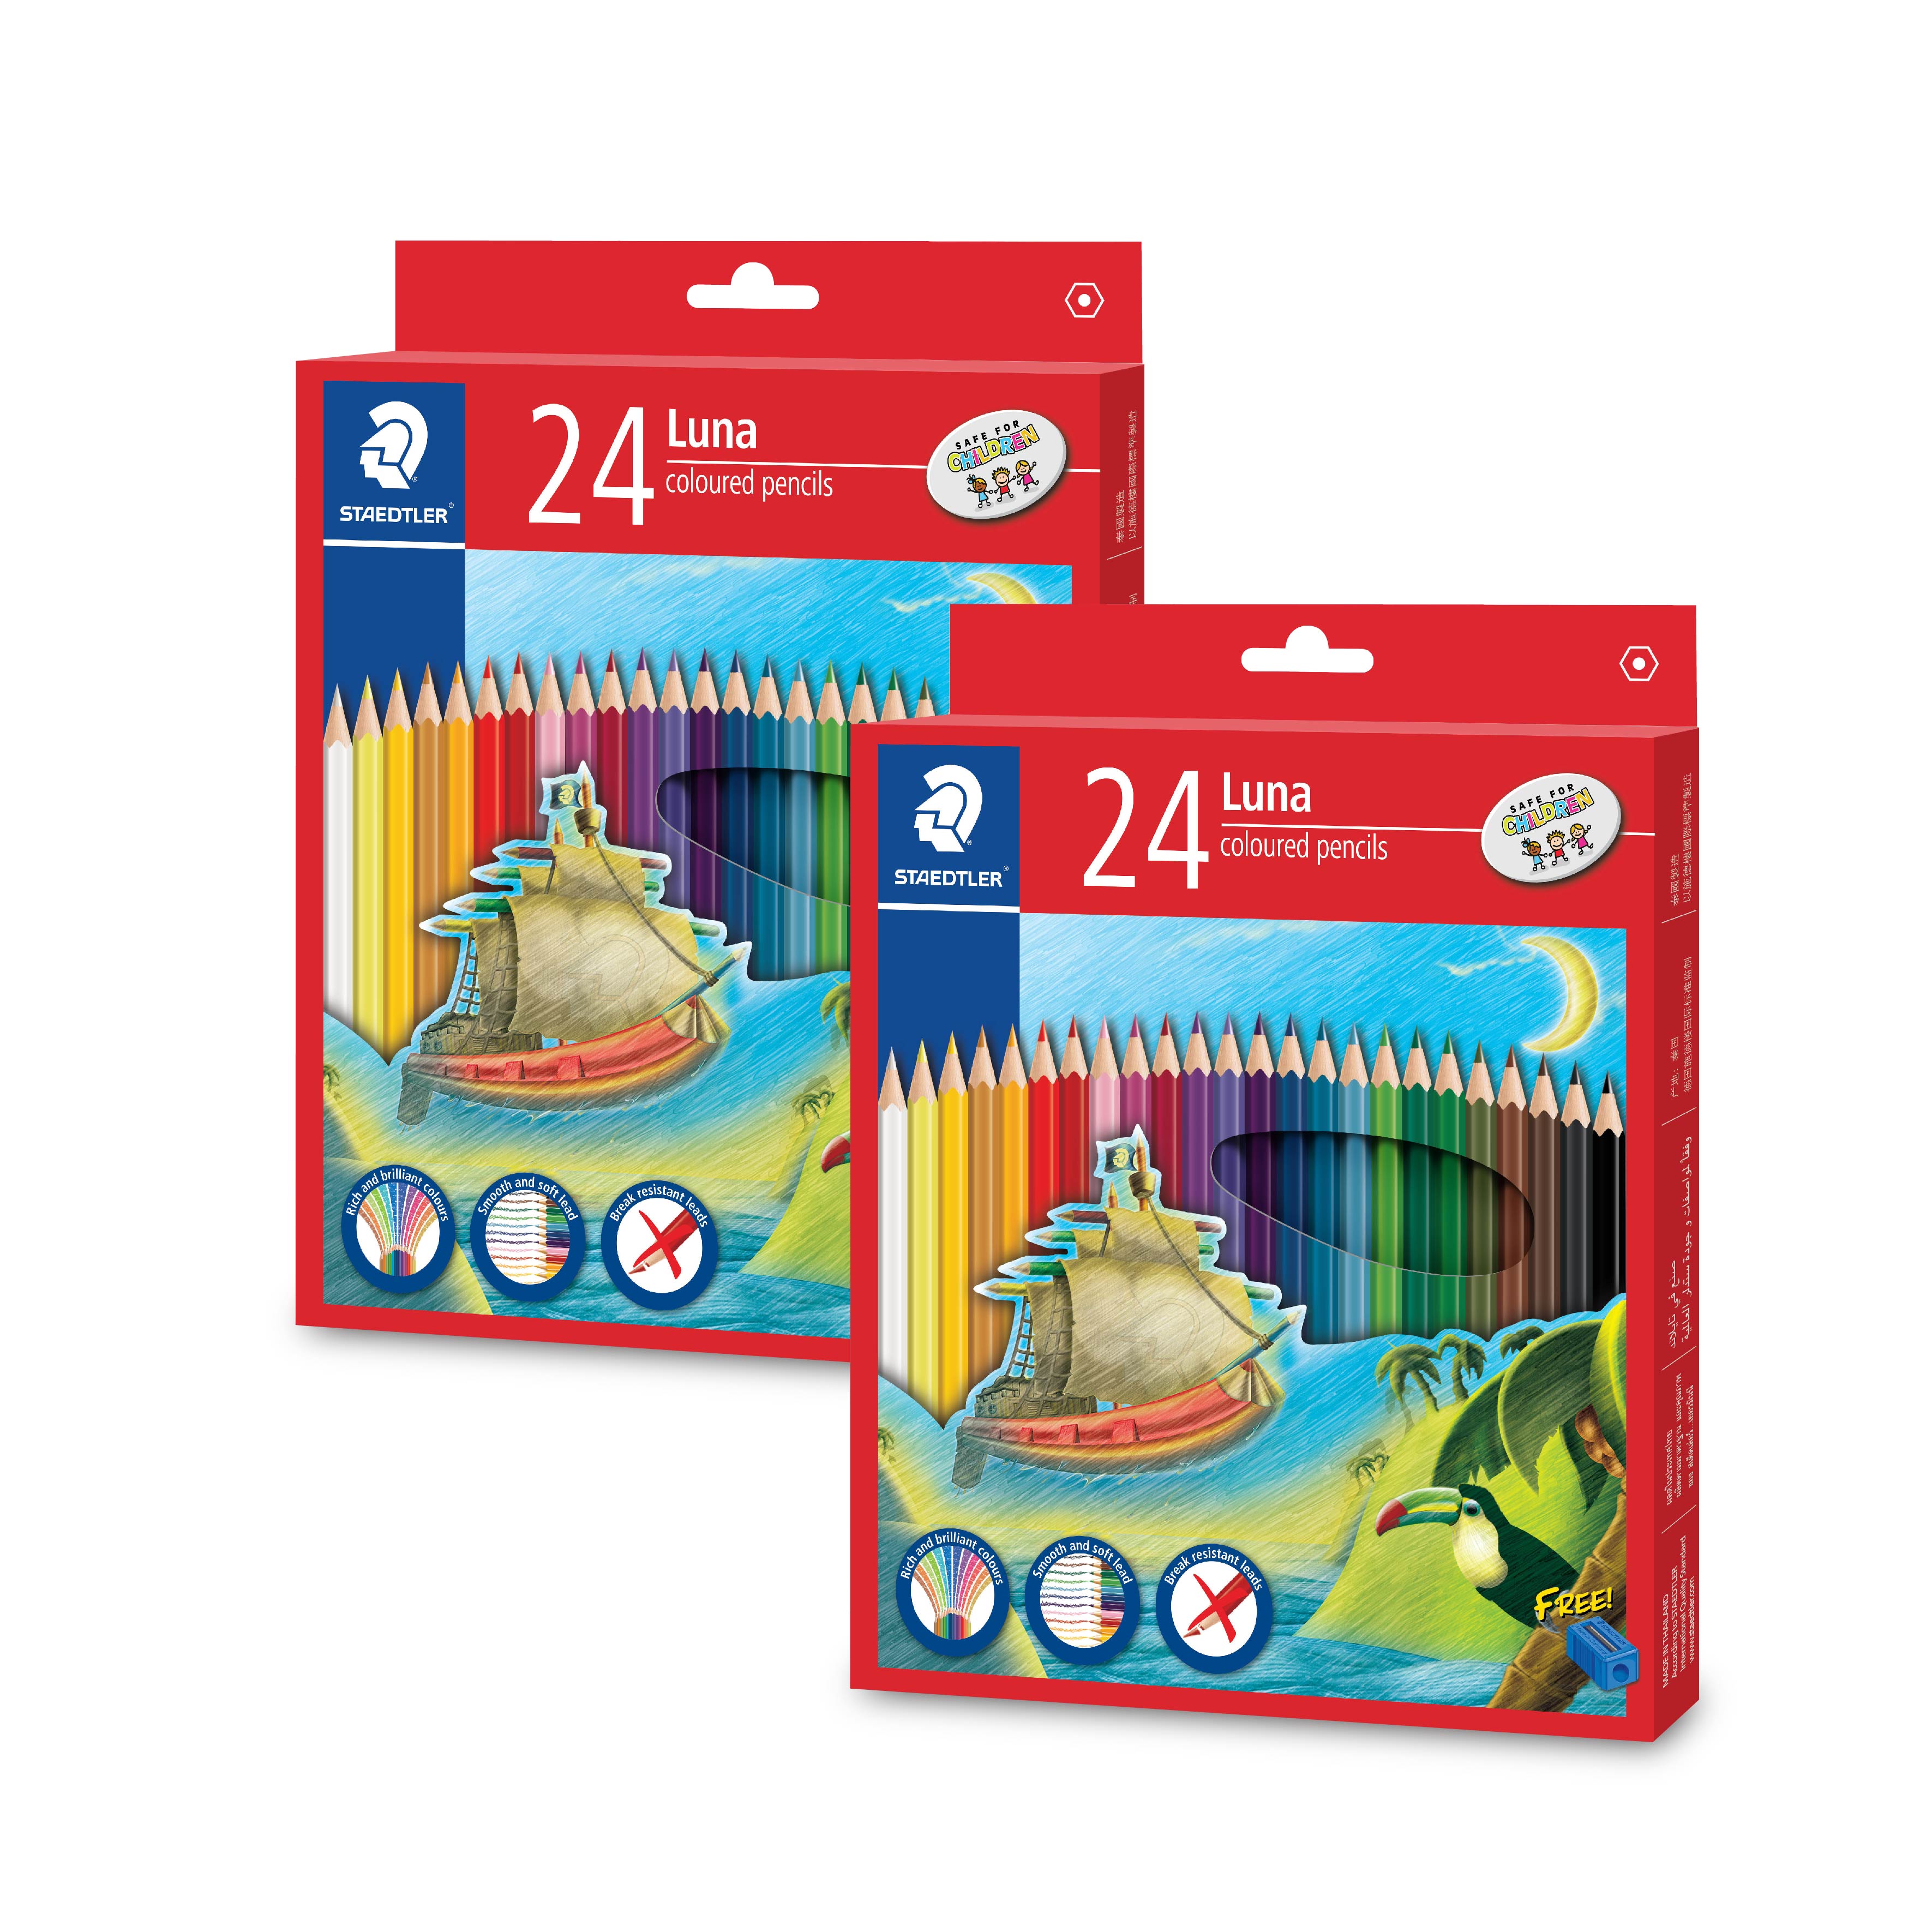 STAEDTLER Luna Colour Pencil 24 Colors - 2 Pack - _MS, ART & CRAFT, ECTL-10DEAL, ECTL-AUG23, PAPER, STAEDTLER